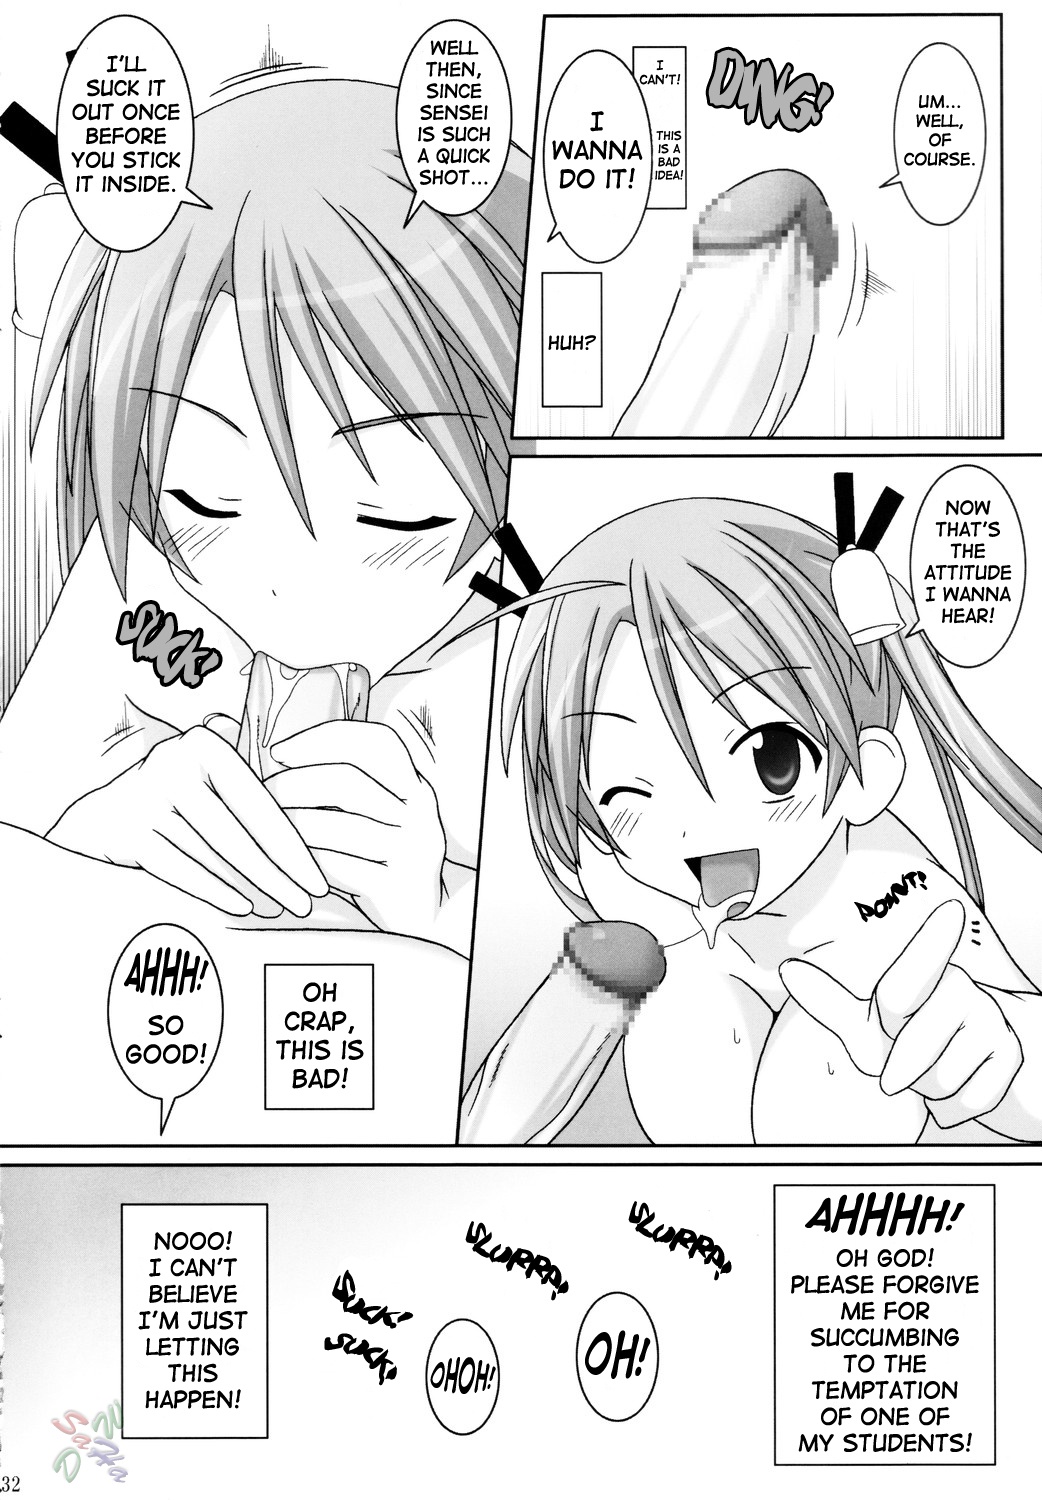 [SaHa] Asuna Only 33.jpg